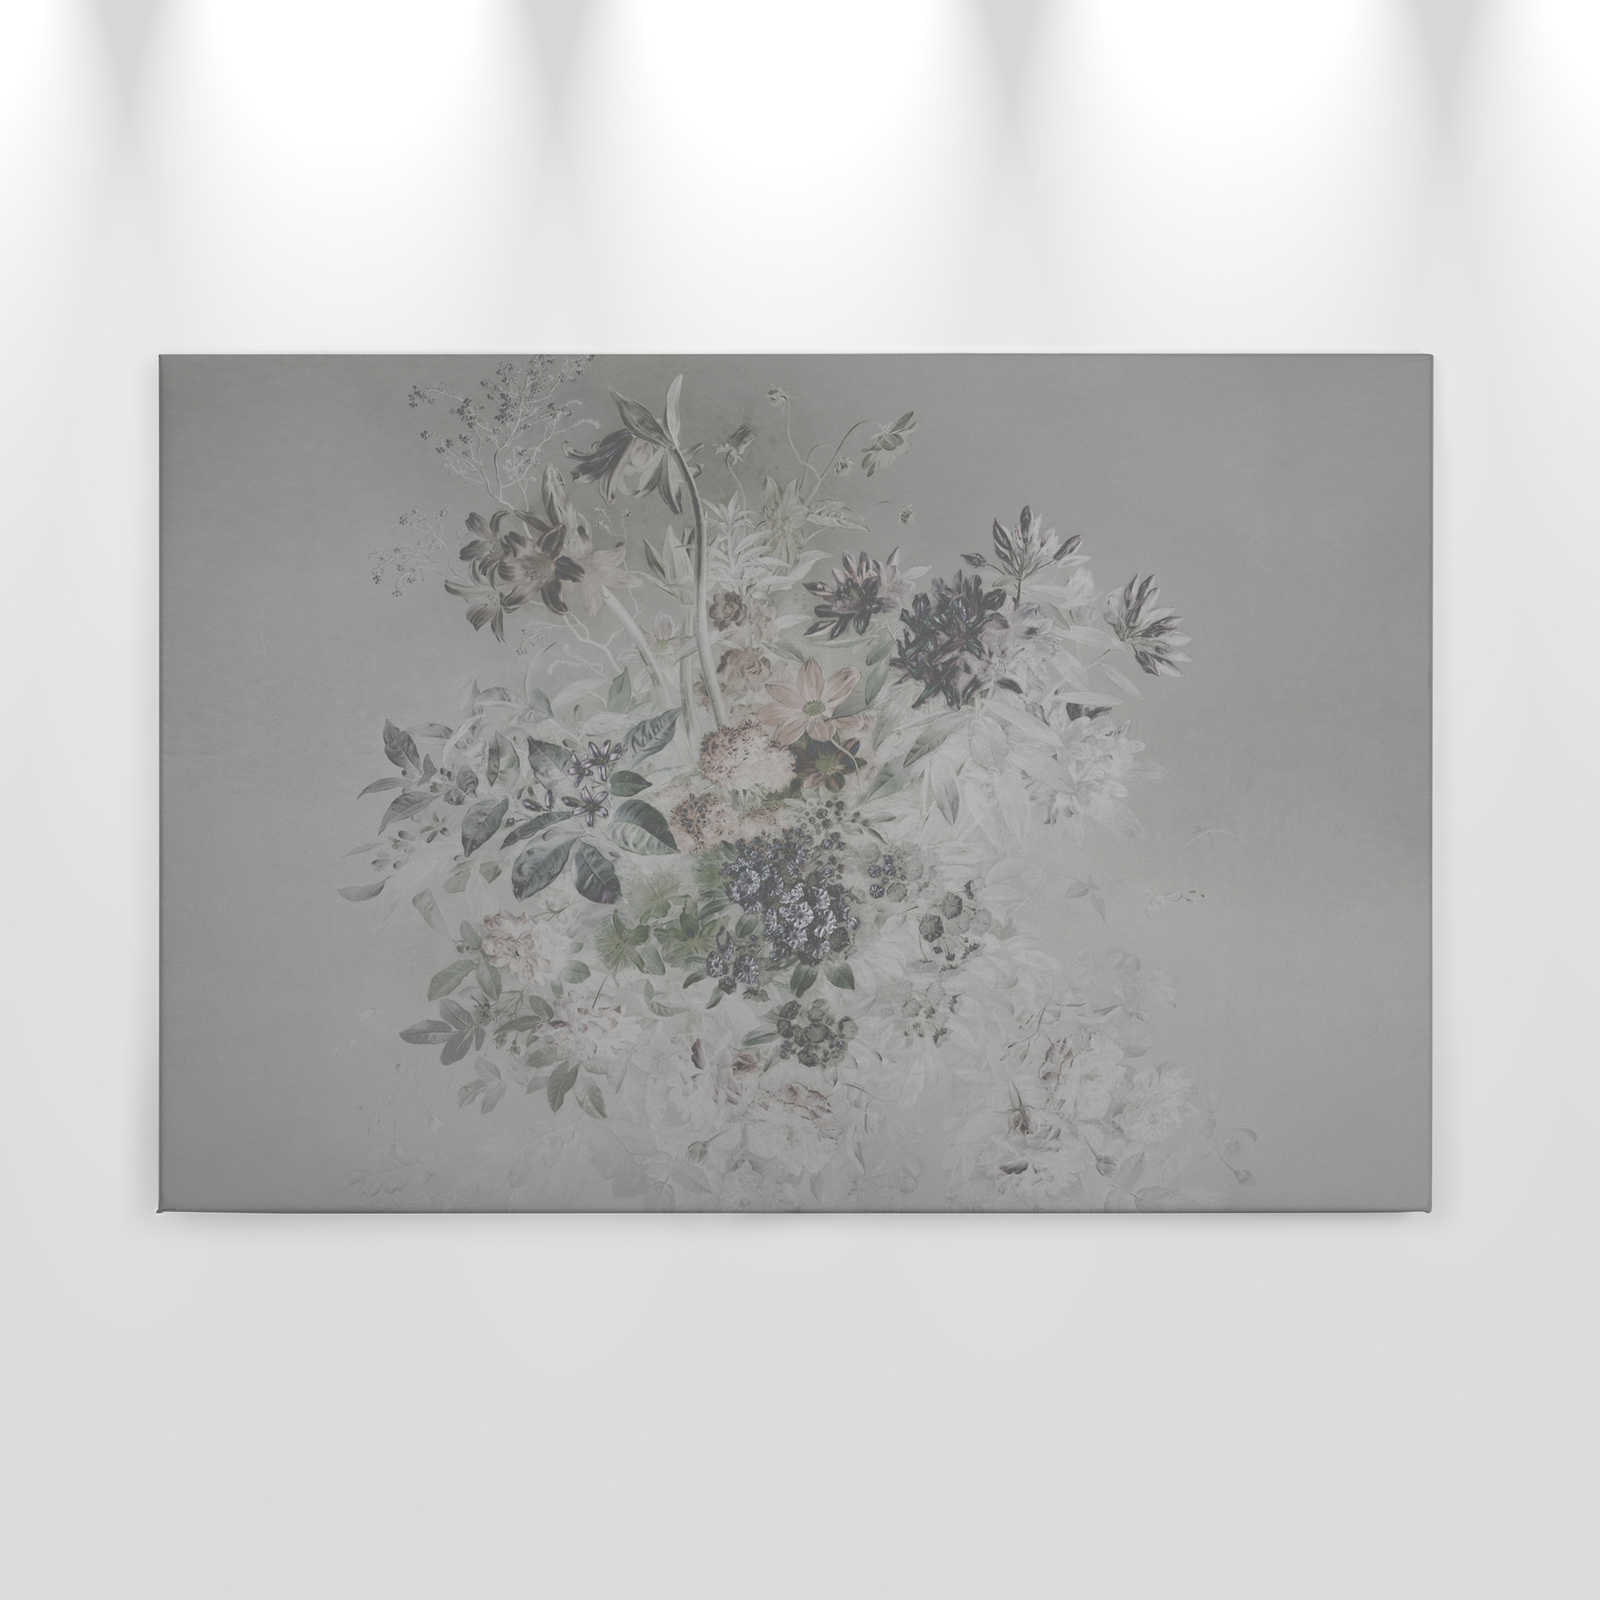             Toile motif fleurs romantiques - 0,90 m x 0,60 m
        